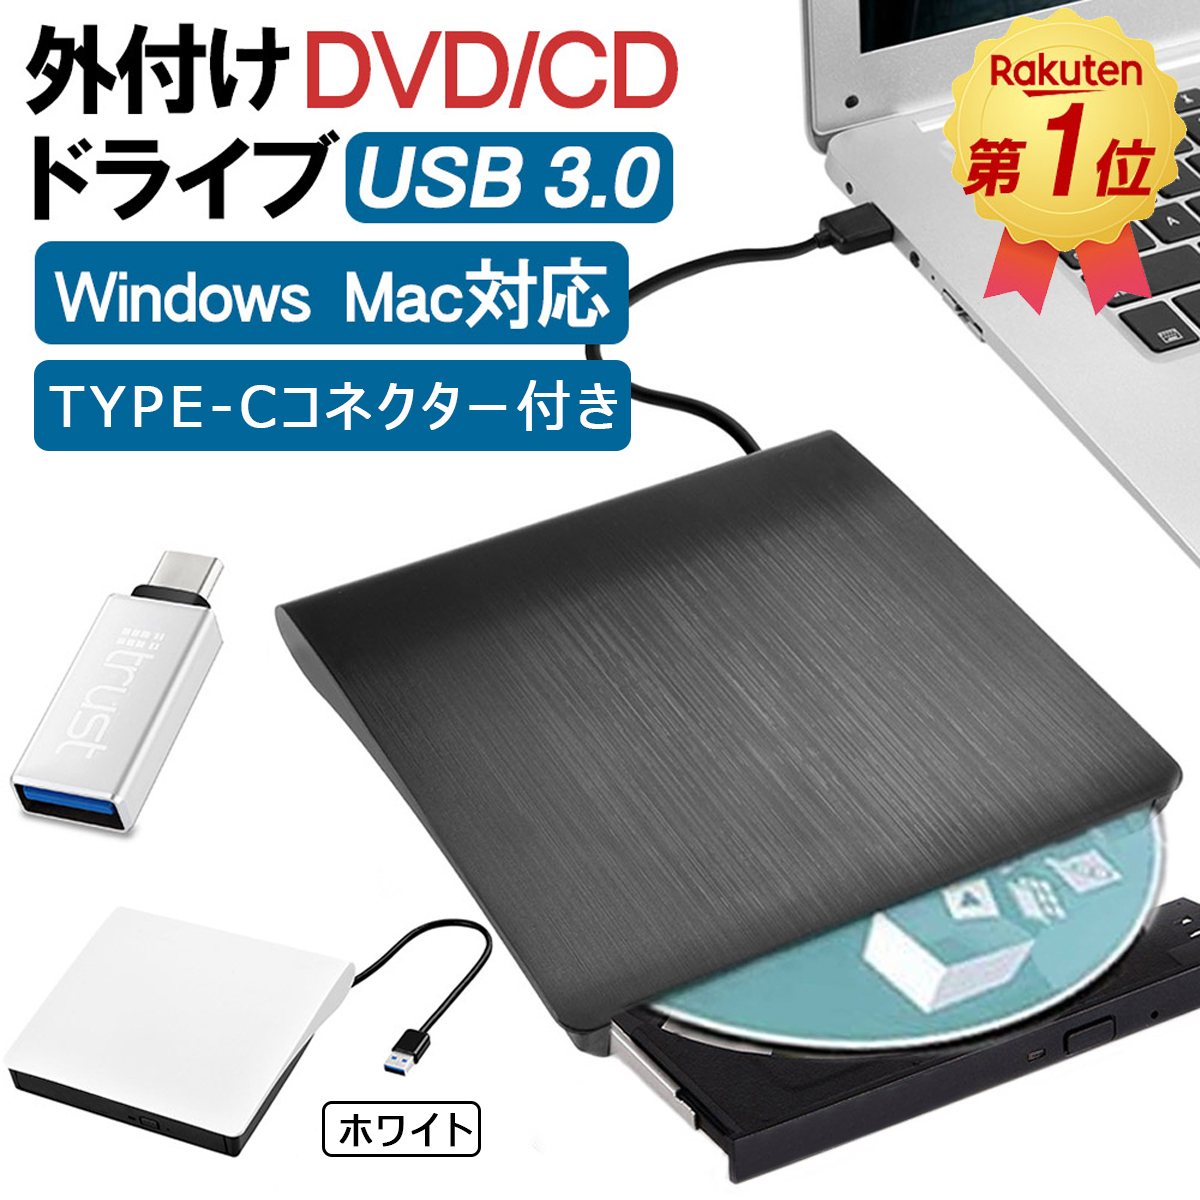 ファッション通販 USB3.0接続 外付けブレーレイドライブ BD DVD CD読取専用 Windows Mac両対応 ブラック 